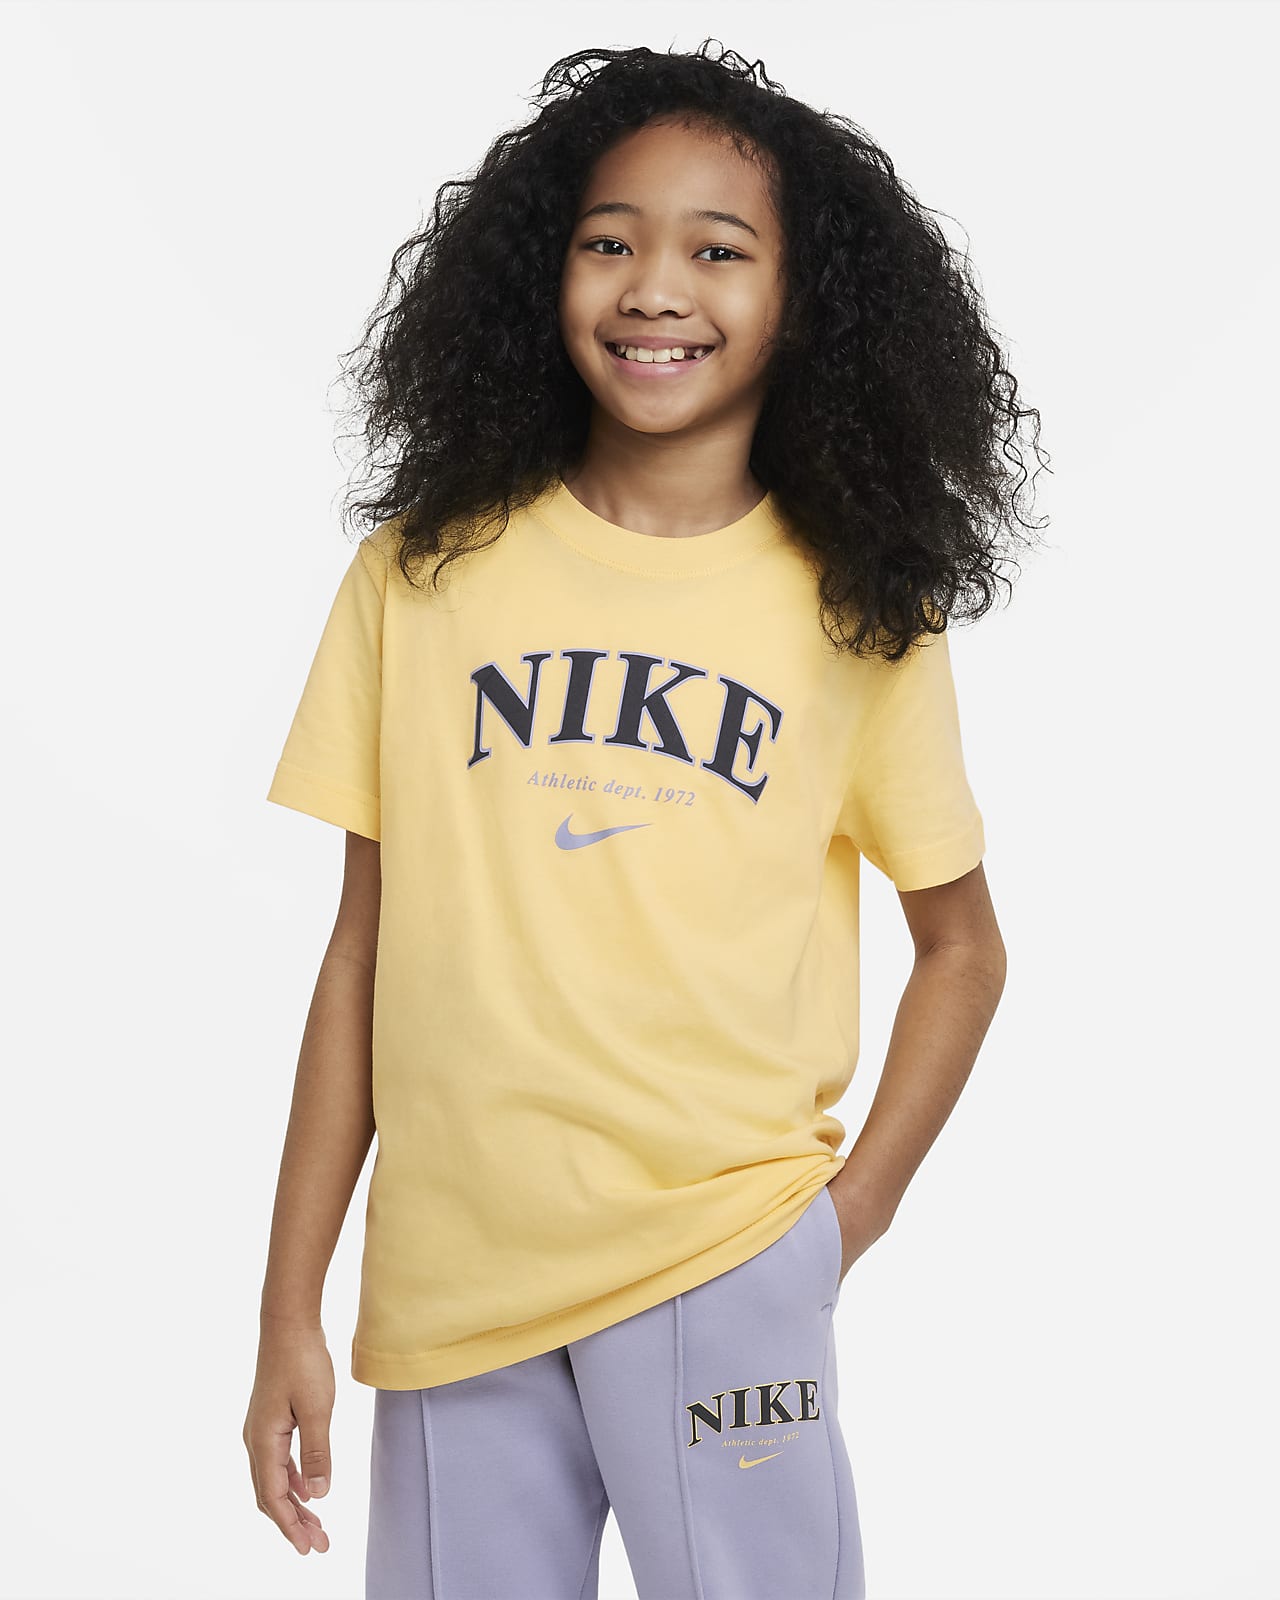 Materialisme famlende røgelse Nike Sportswear-T-shirt til større børn (piger). Nike DK